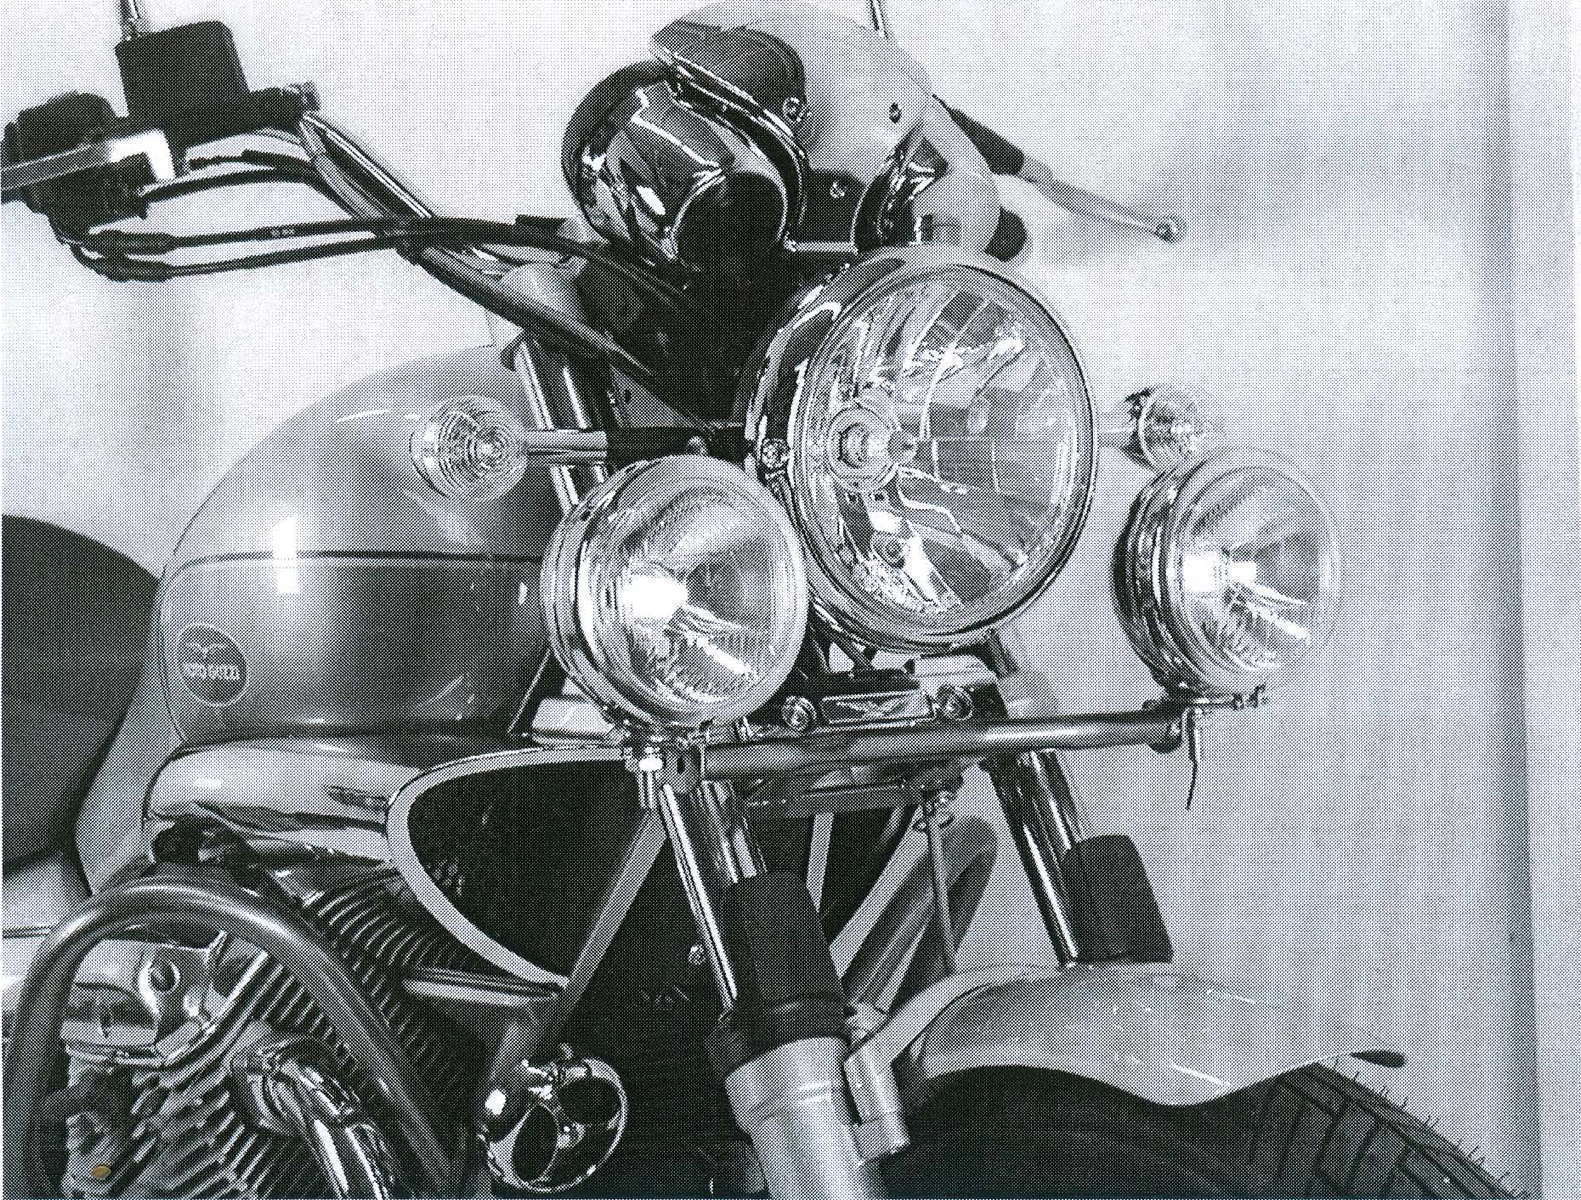 Twinlight Zusatzscheinwerferset (Fernlicht) inkl. Halter und Kabel chrom für Moto Guzzi Nevada Classic V 750 ie/Aquilia Nera (2004-2009)